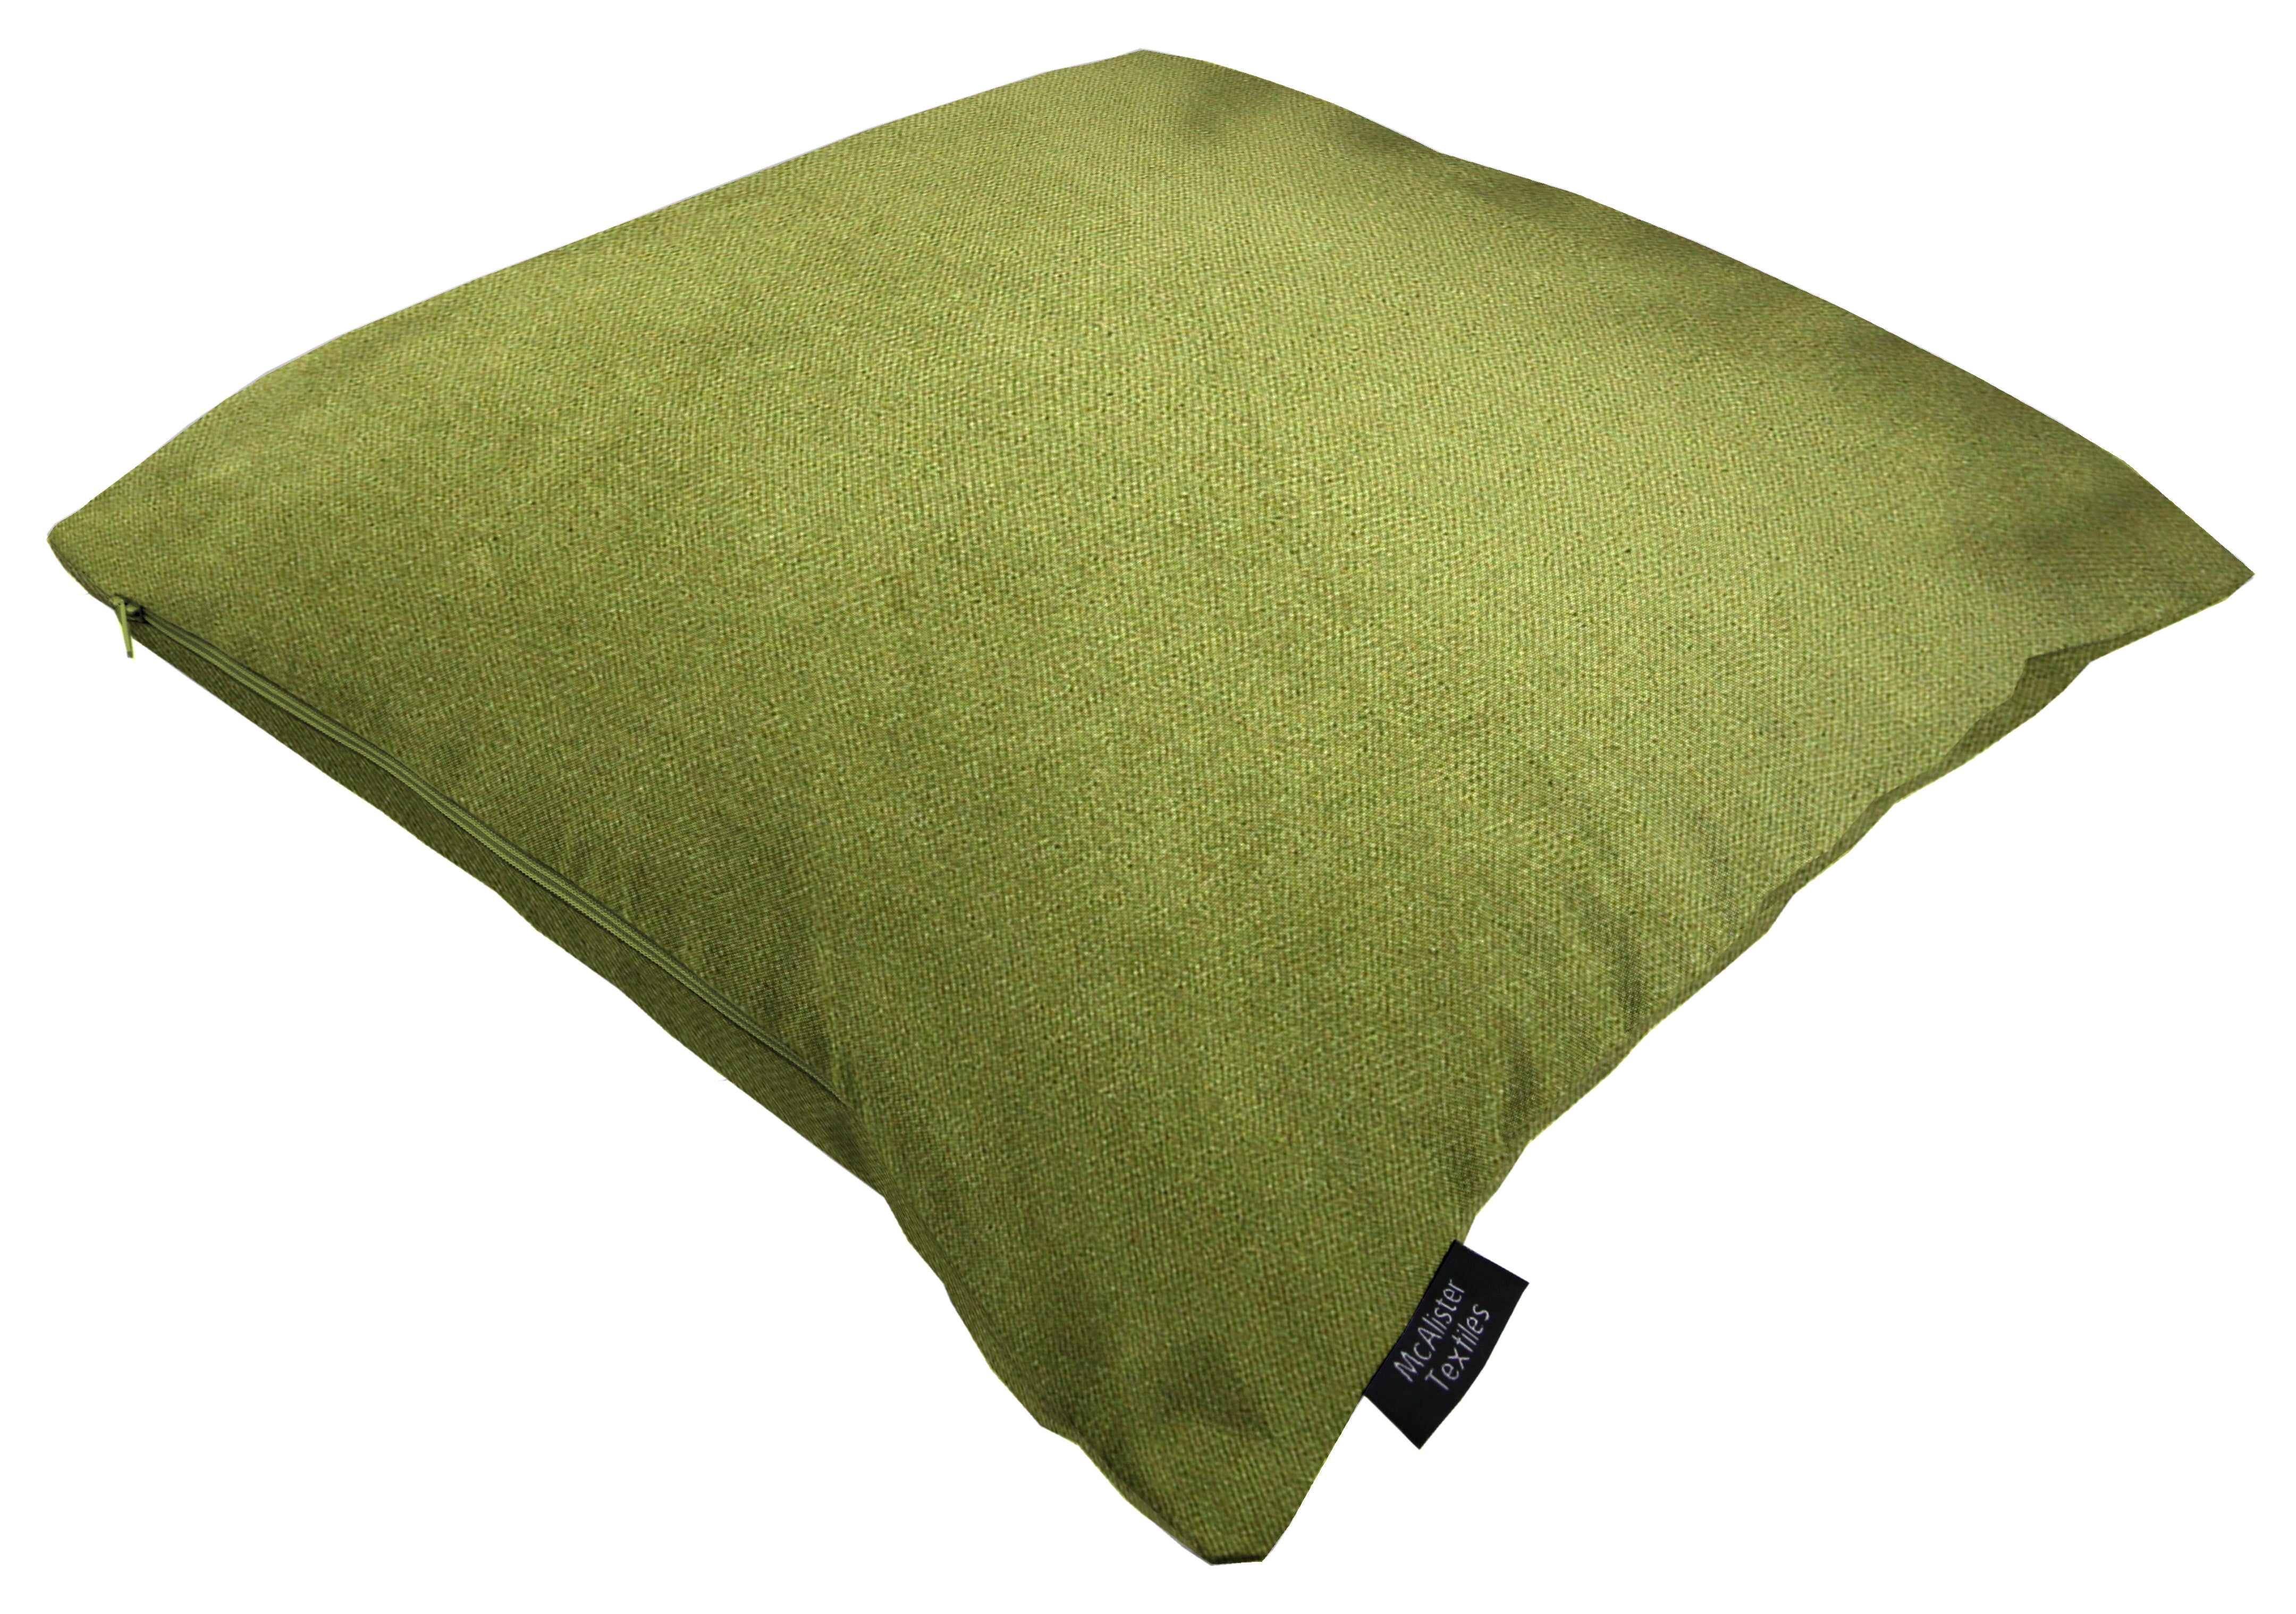 Matt Fern Green Velvet Modern Look Plain Cushion